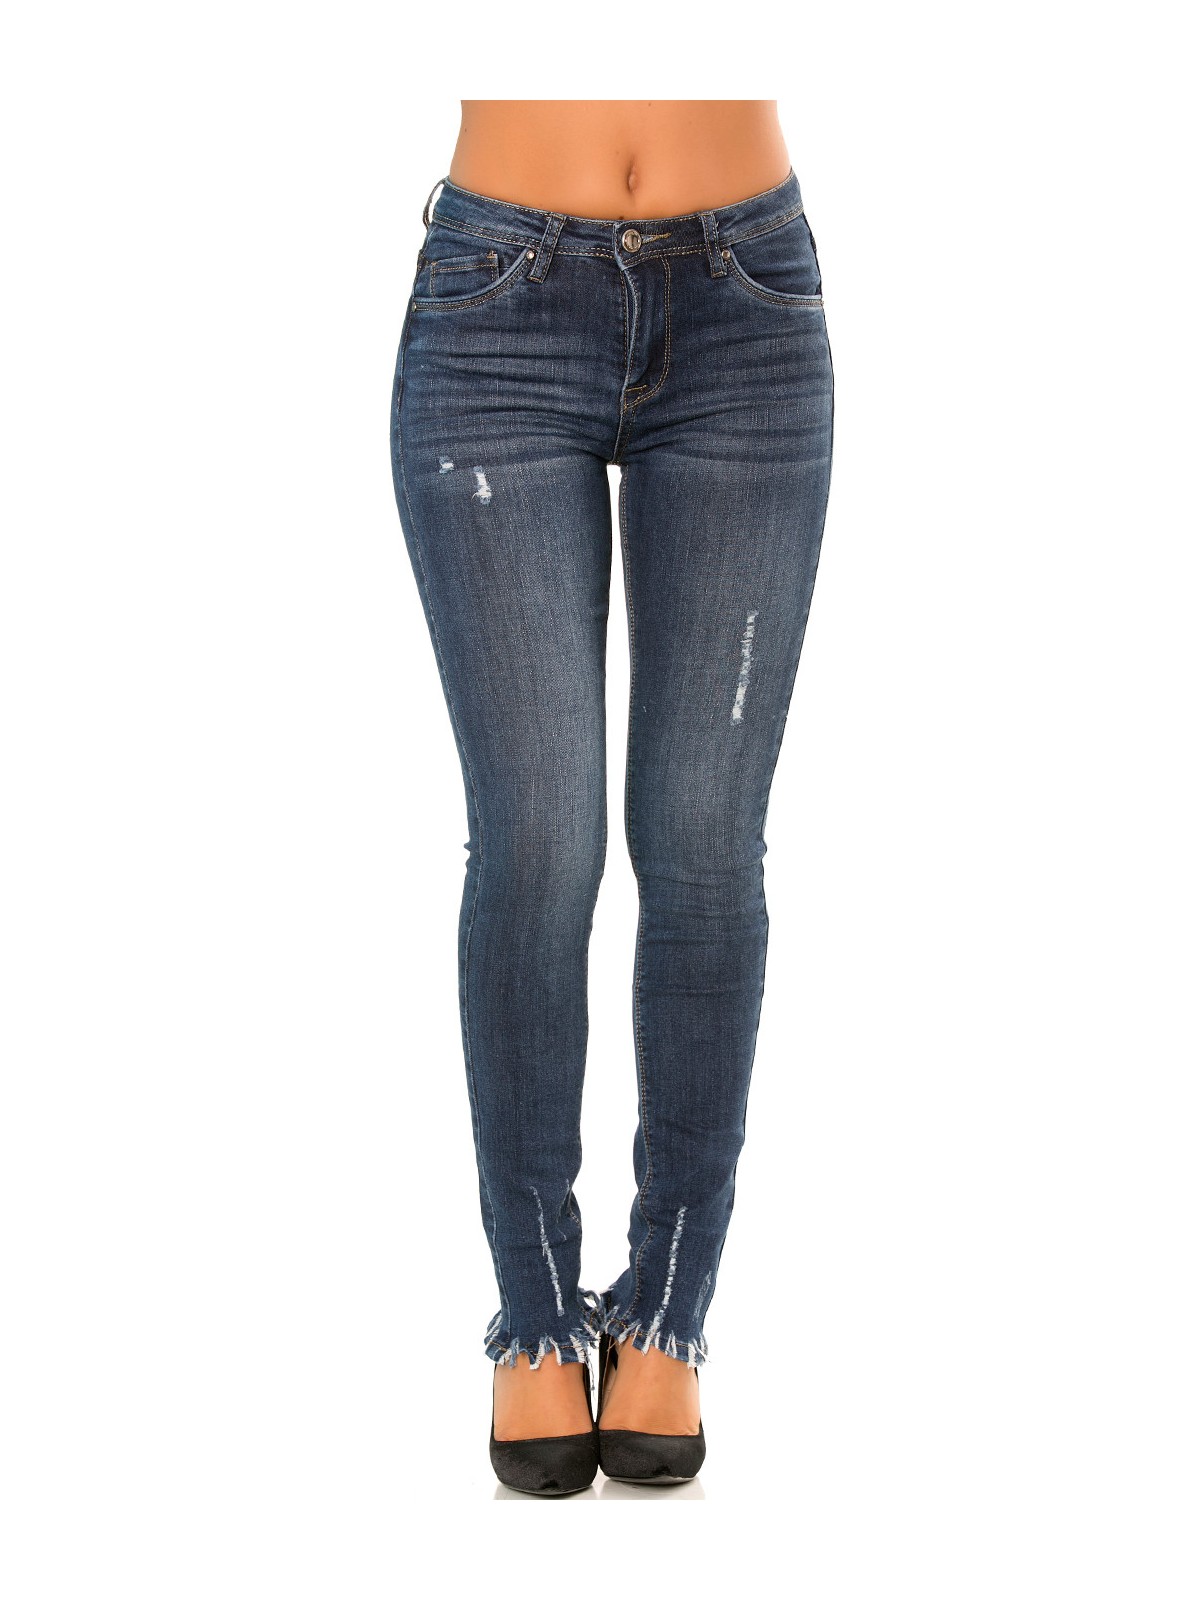 Pantalon jeans slim Bleu écorché sur le bas. PTL-S2607 - 1